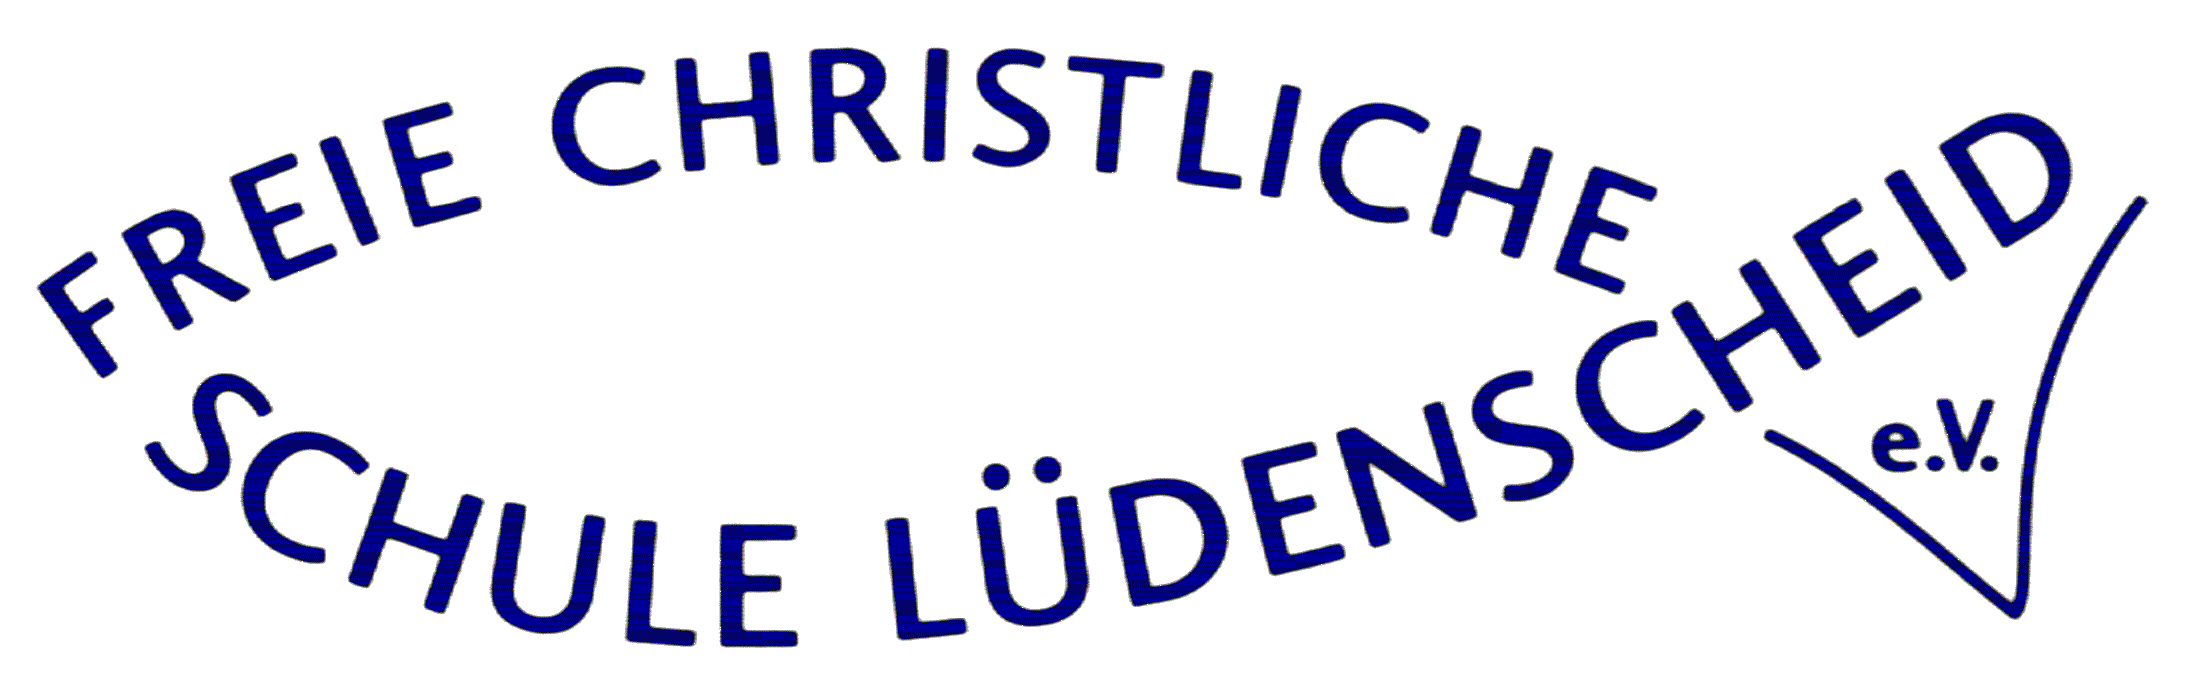 Freie Christliche Hauptschule Lüdenscheid